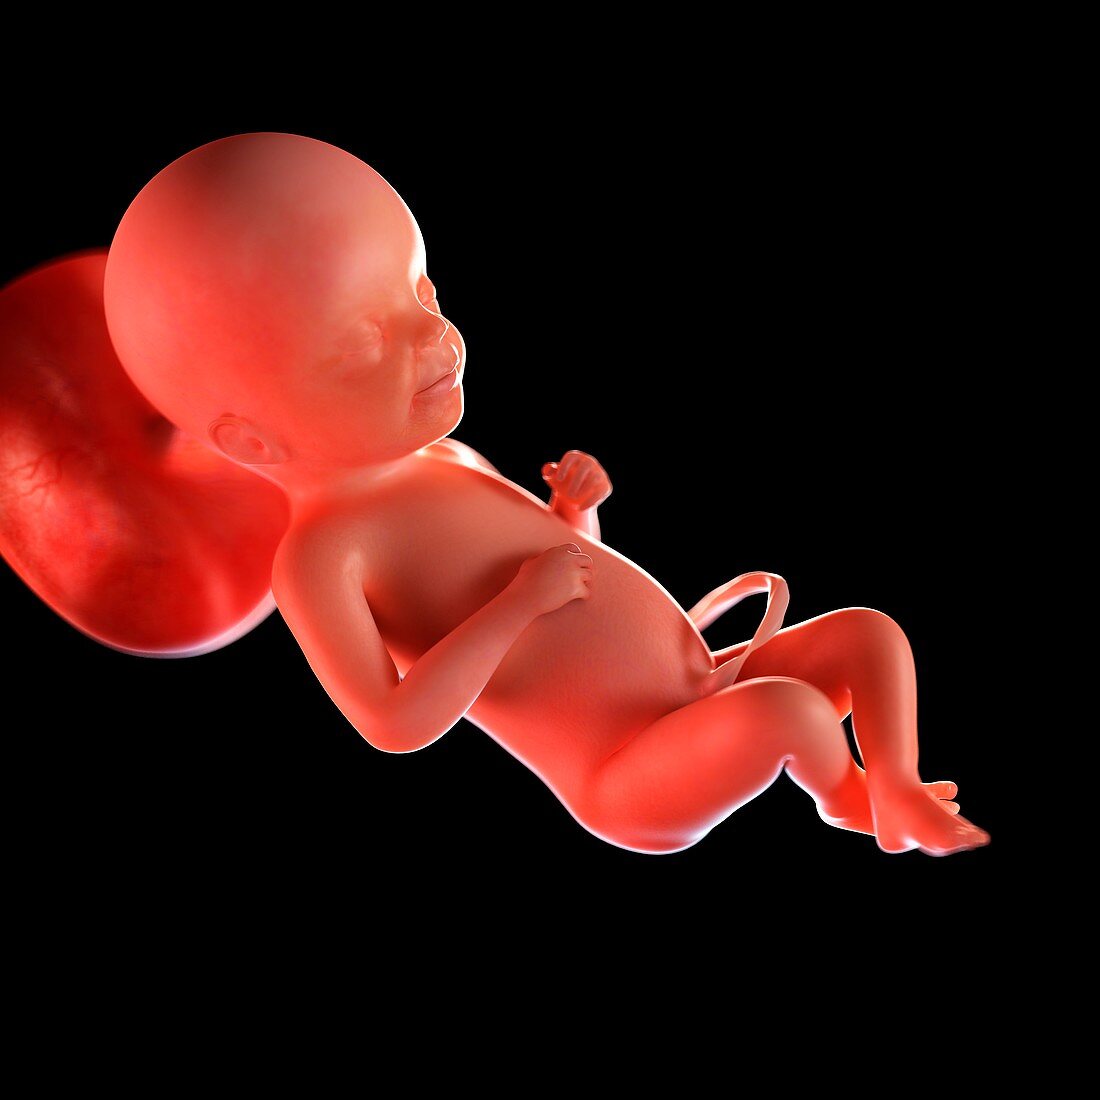 Human foetus age 23 weeks, illustration